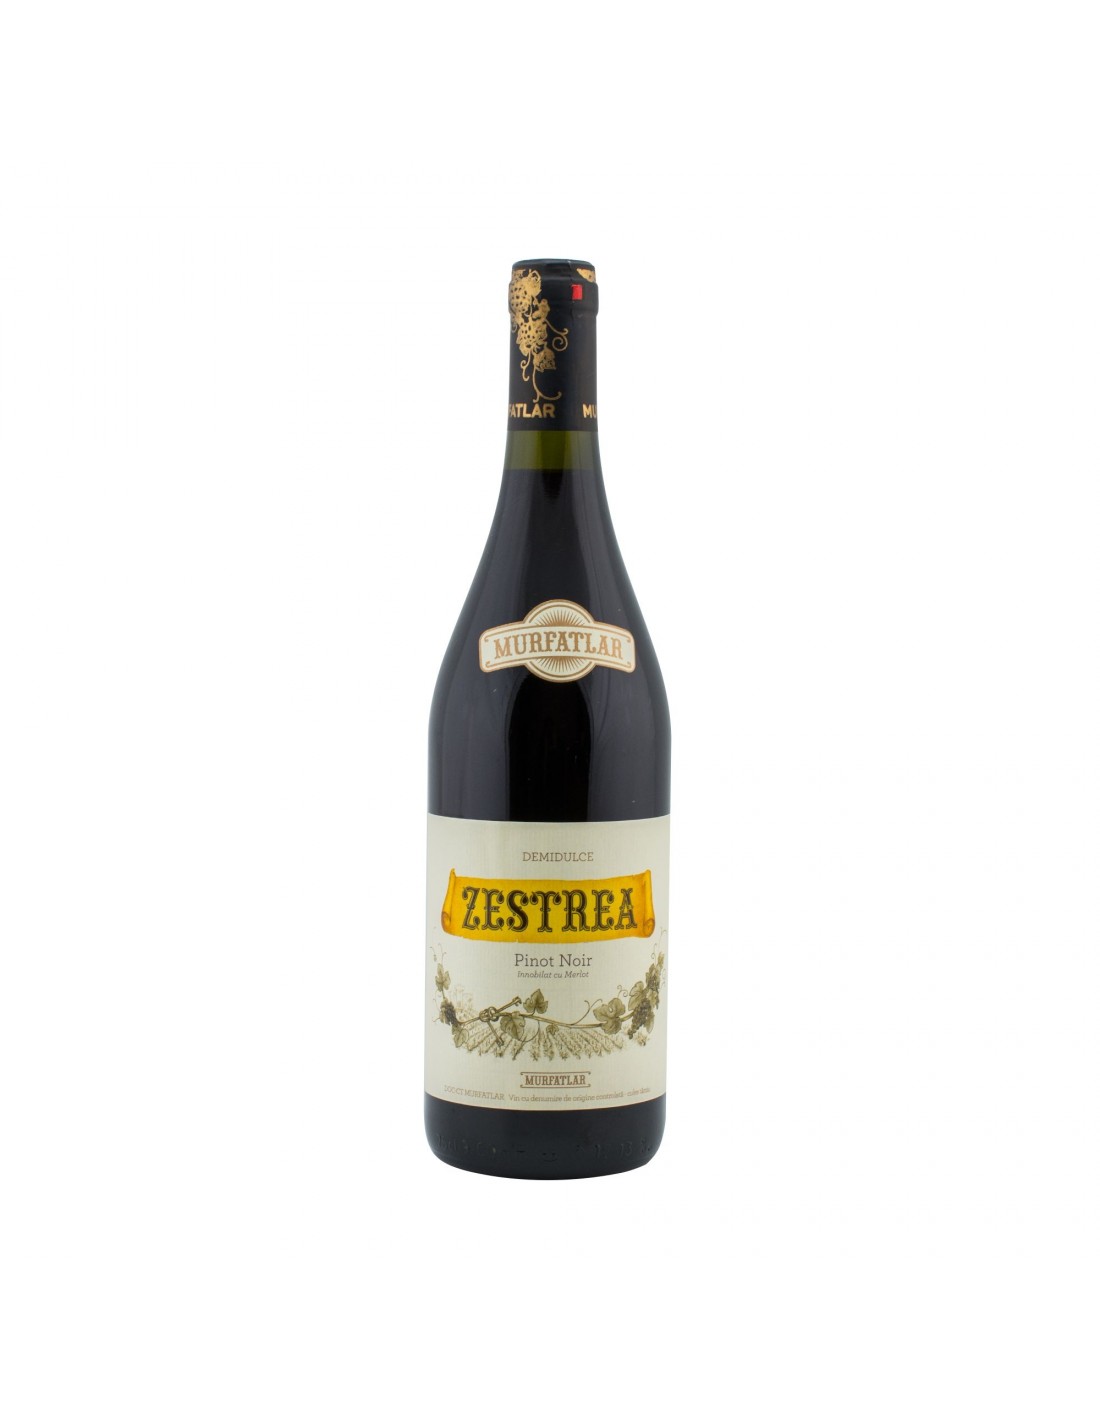 Vin rosu demidulce, Pinot Noir, Zestrea, 0.75L, 12.5% alc., Romania